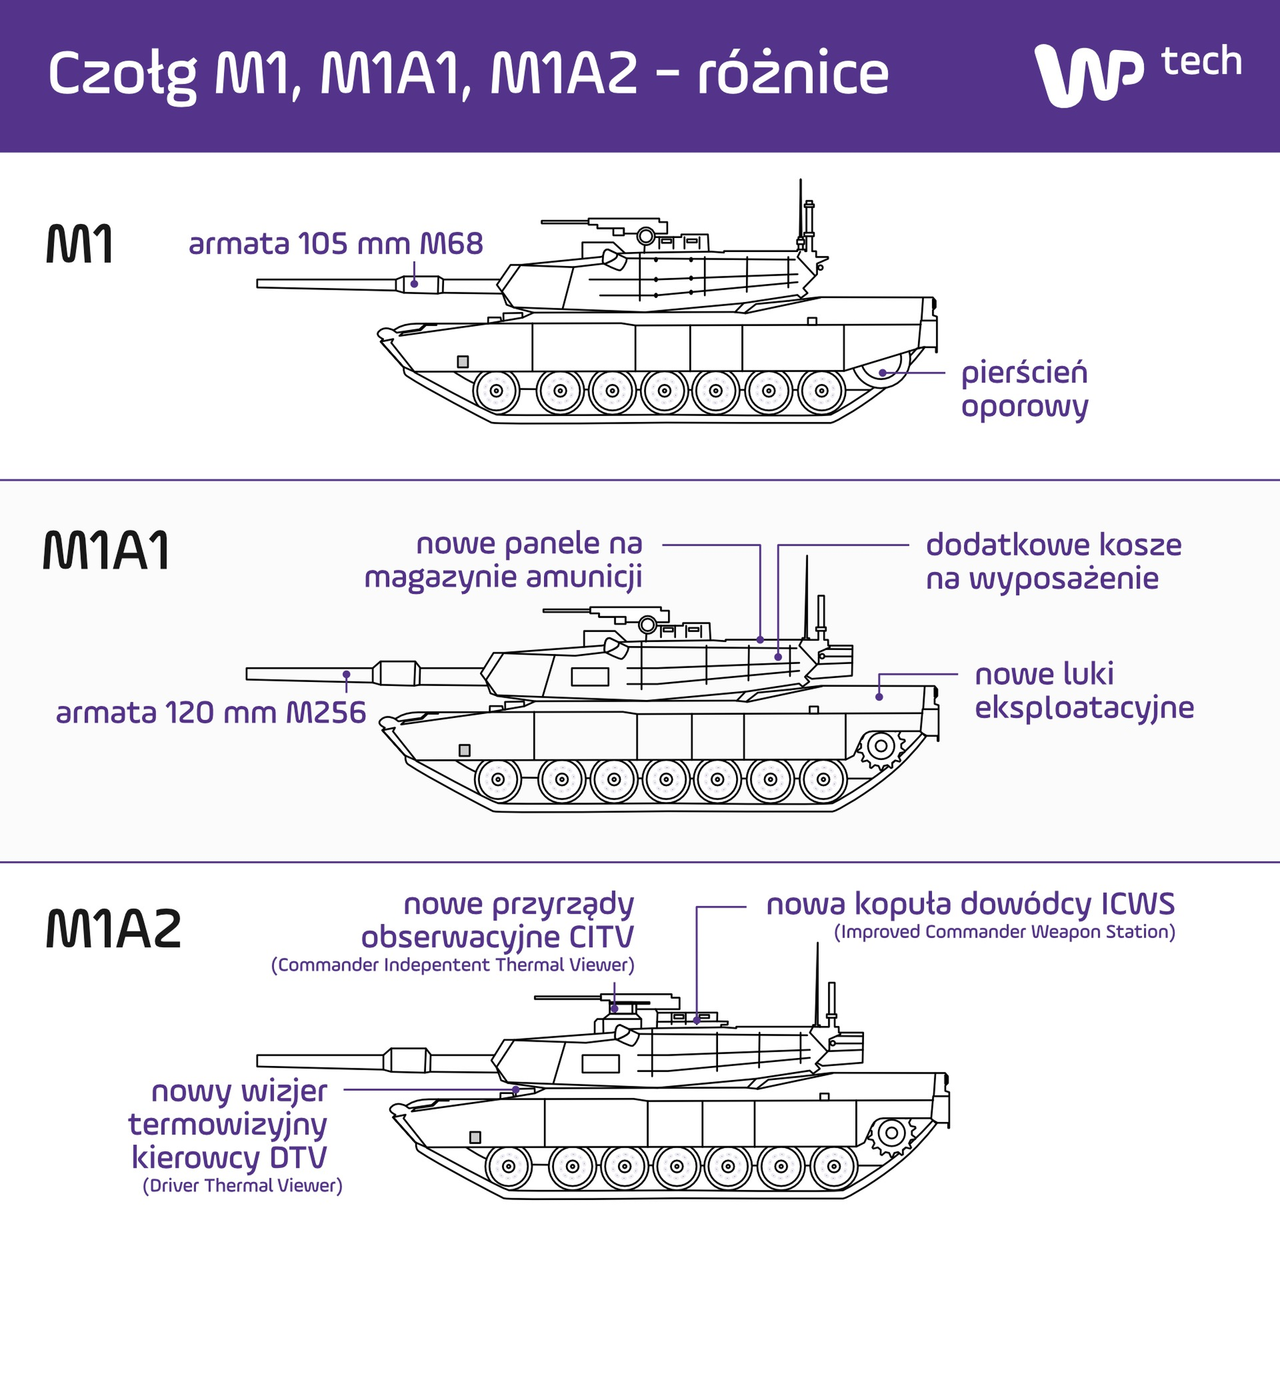 Kluczowe różnice pomiędzy wersjami czołgu Abrams (kliknij aby powiększyć grafikę)